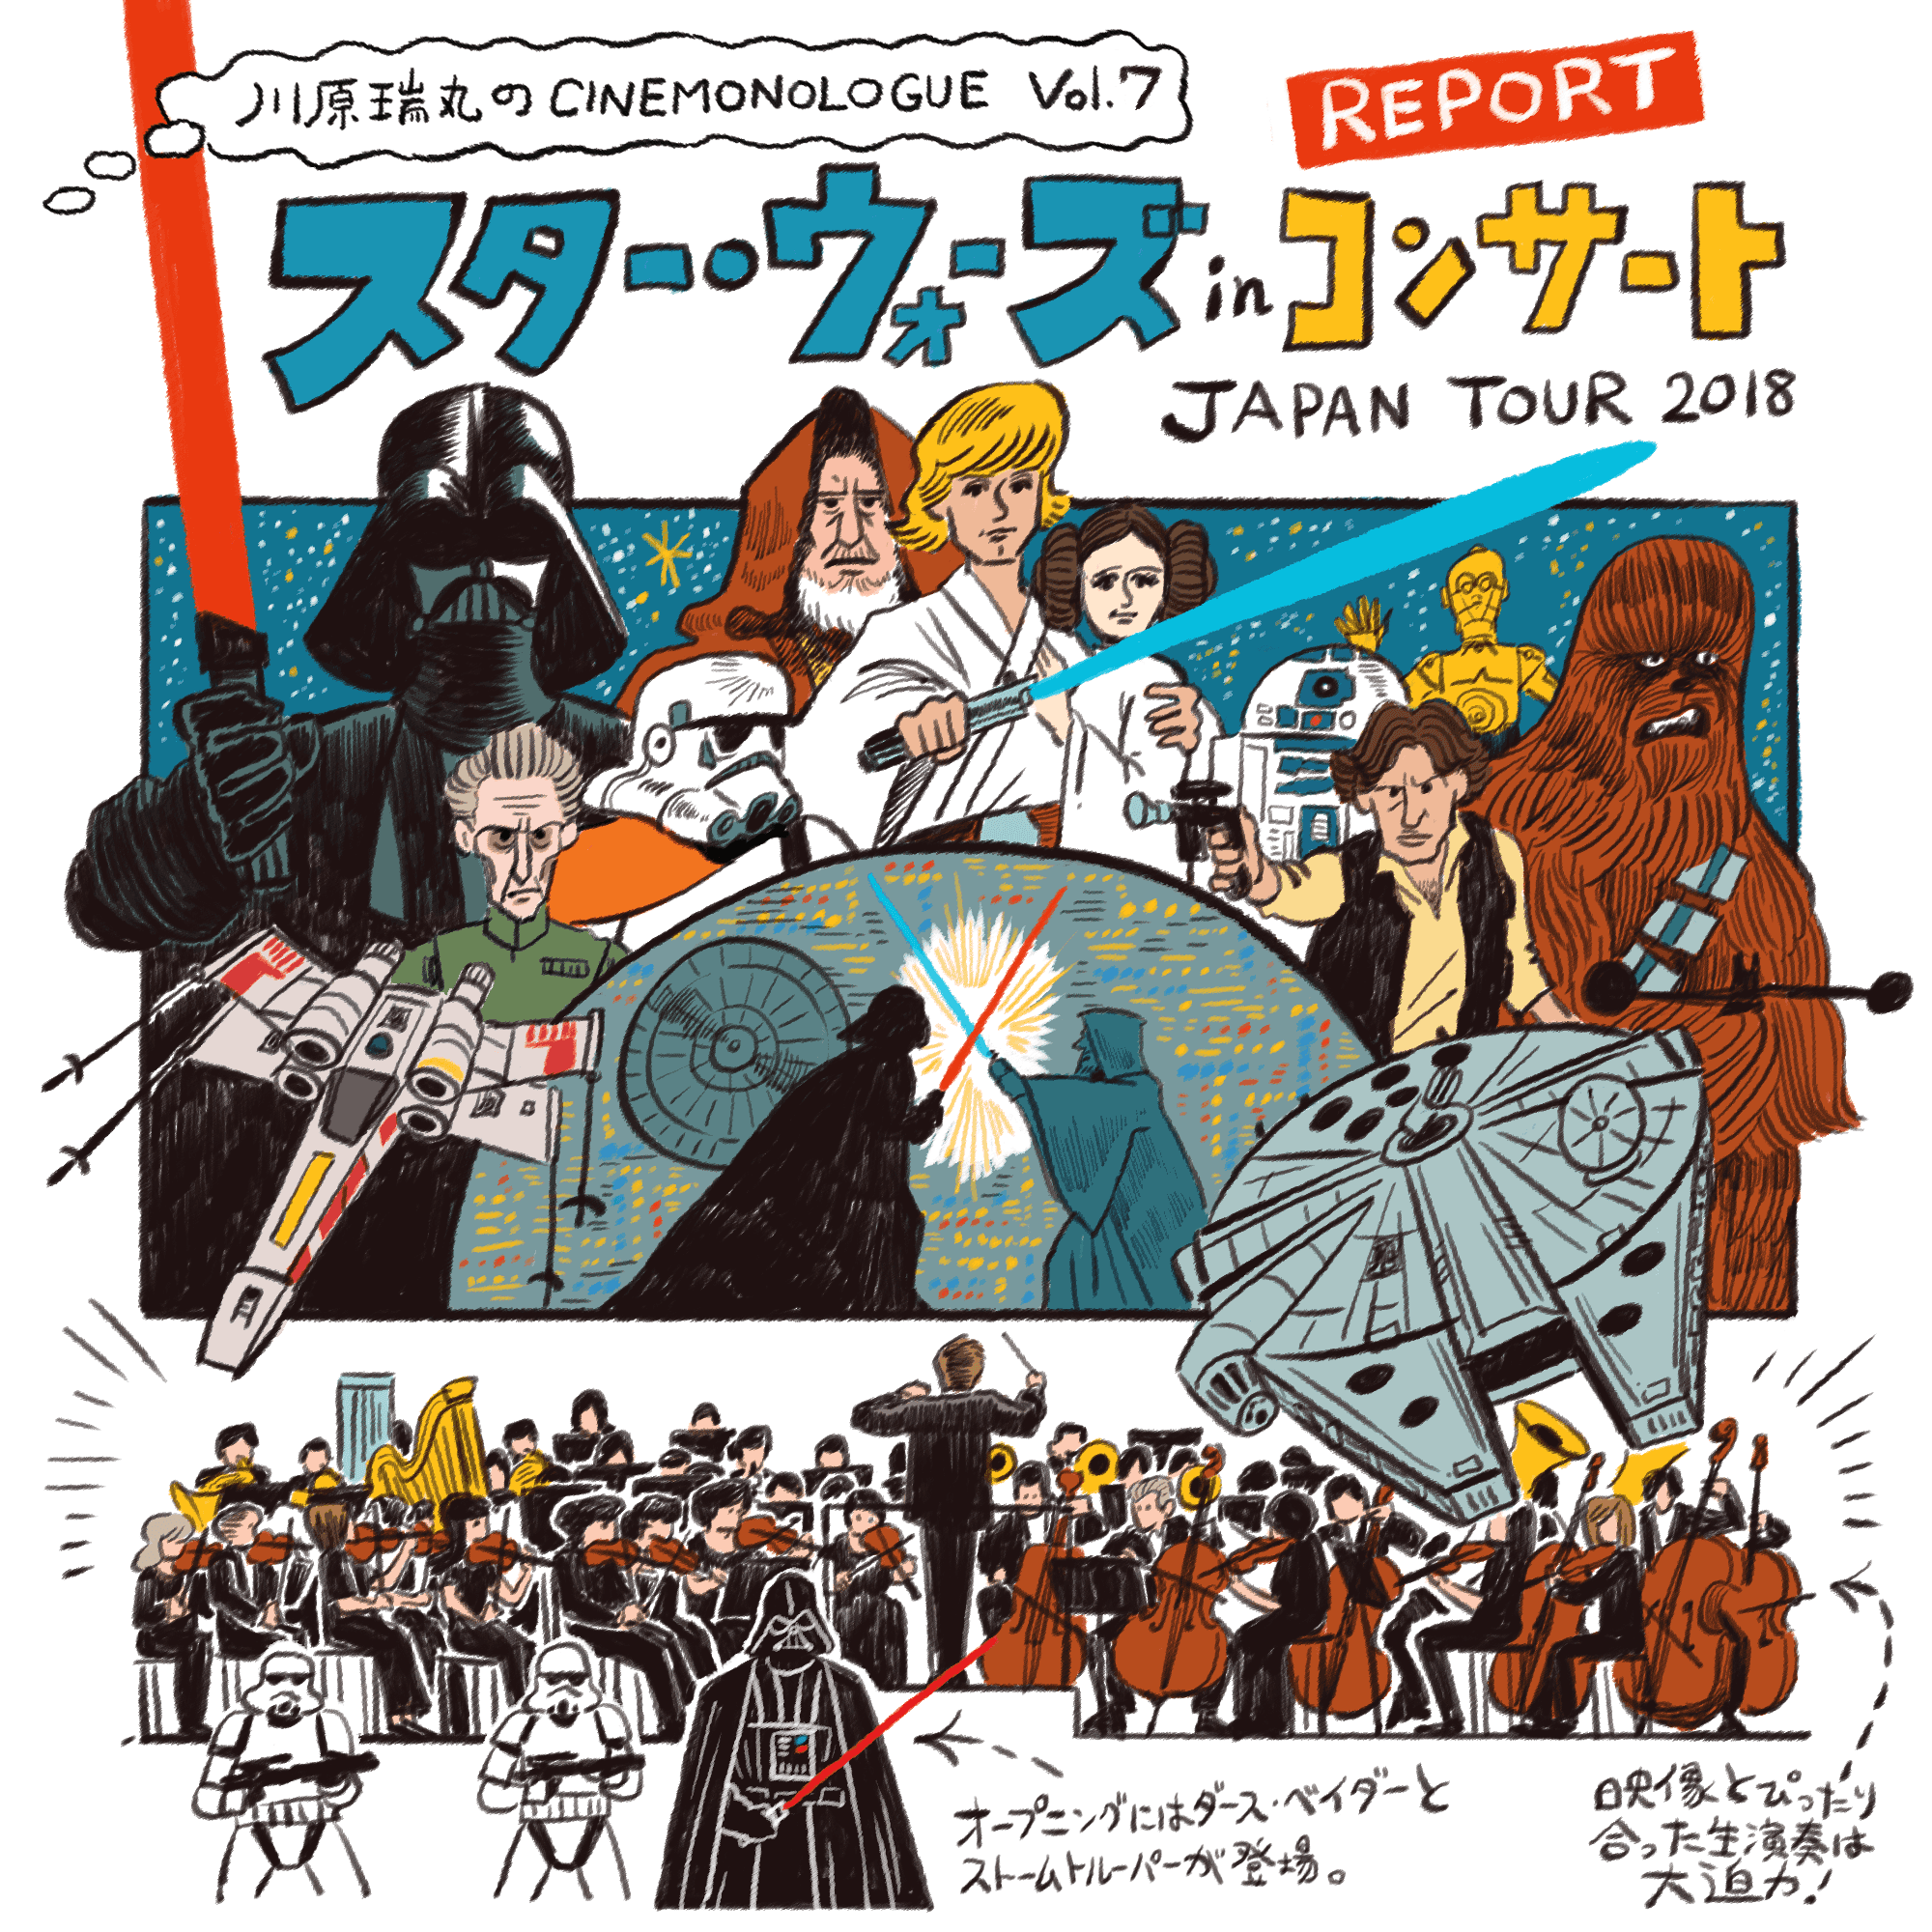 スター ウォーズ In コンサート Japan Tour 18 Report 川原瑞丸のcinemonologue Vol 7 Cinemore シネモア